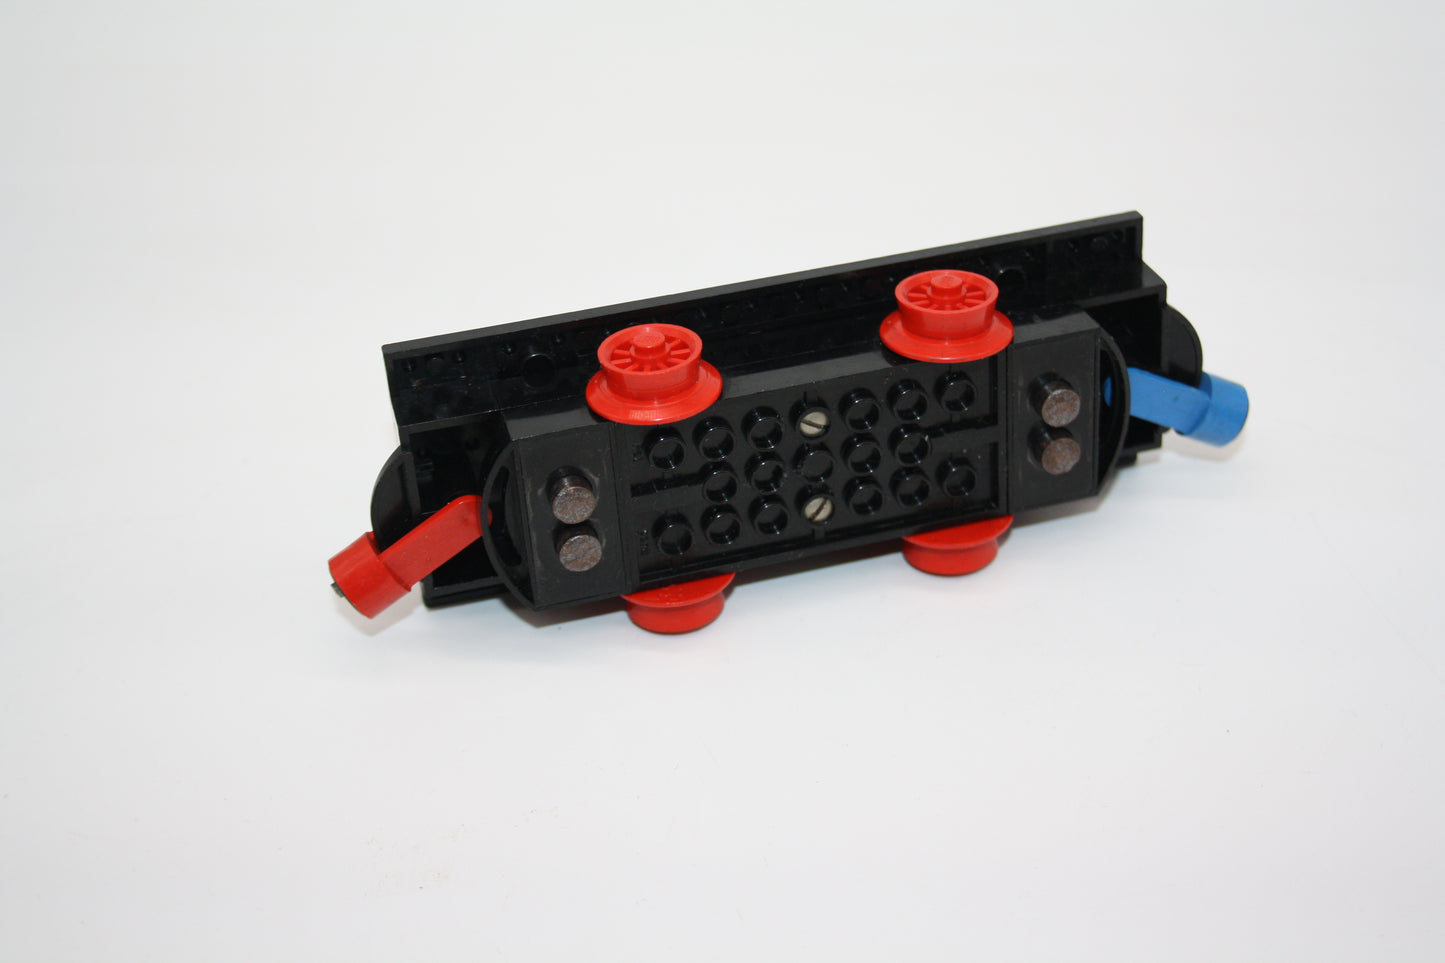 LEGO® Eisenbahn - 12V 12x4x3 1/3 Motor mit Reifen, Platte und 2 Schleifsteinen - schwarz - Waggon/Wagon